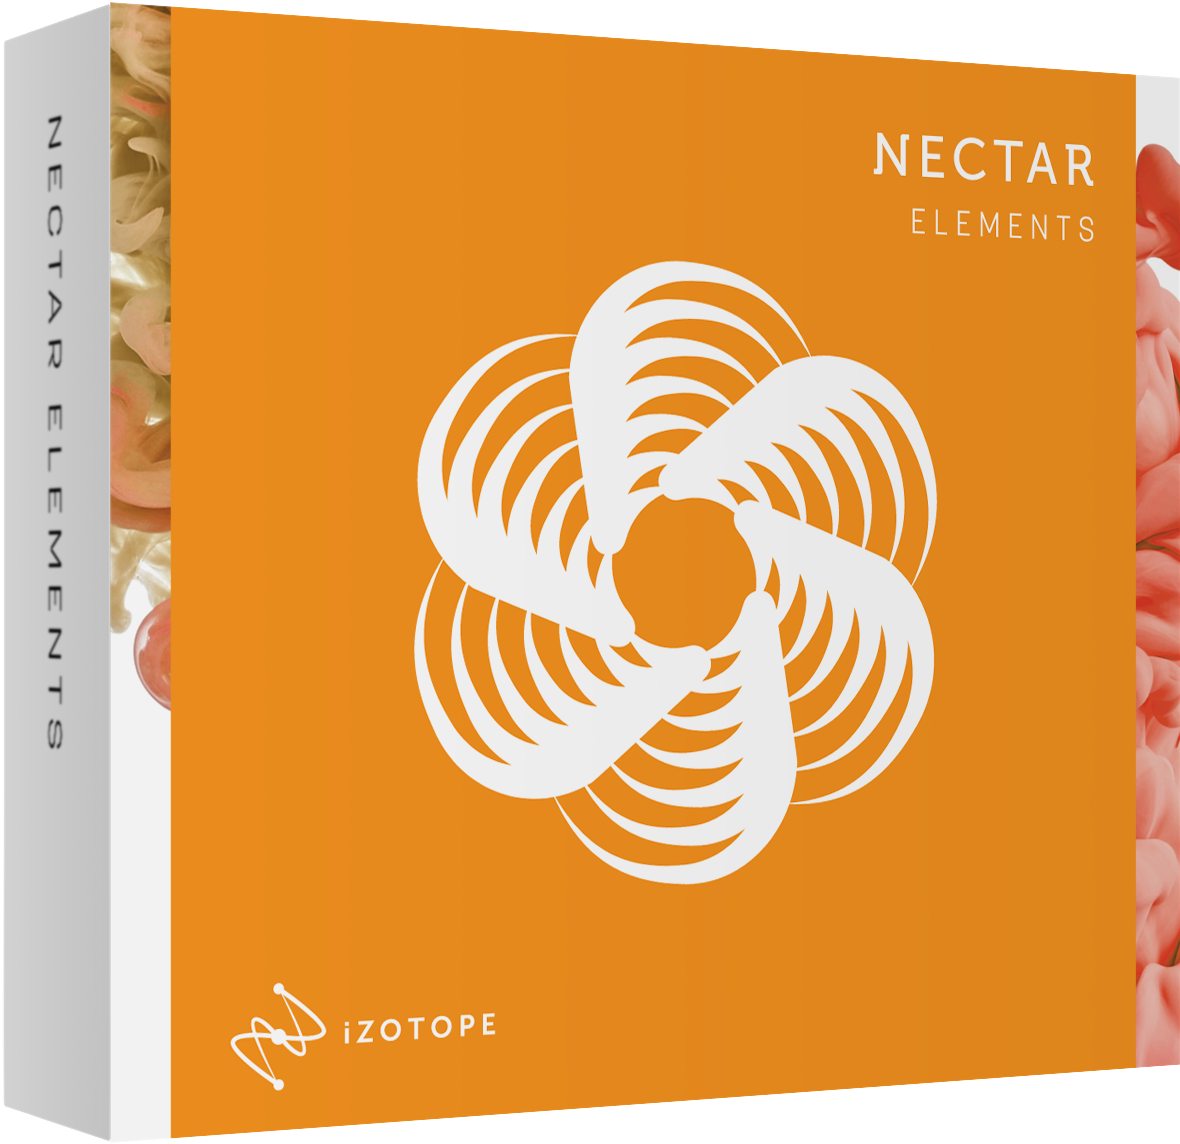 izotope nectar elements